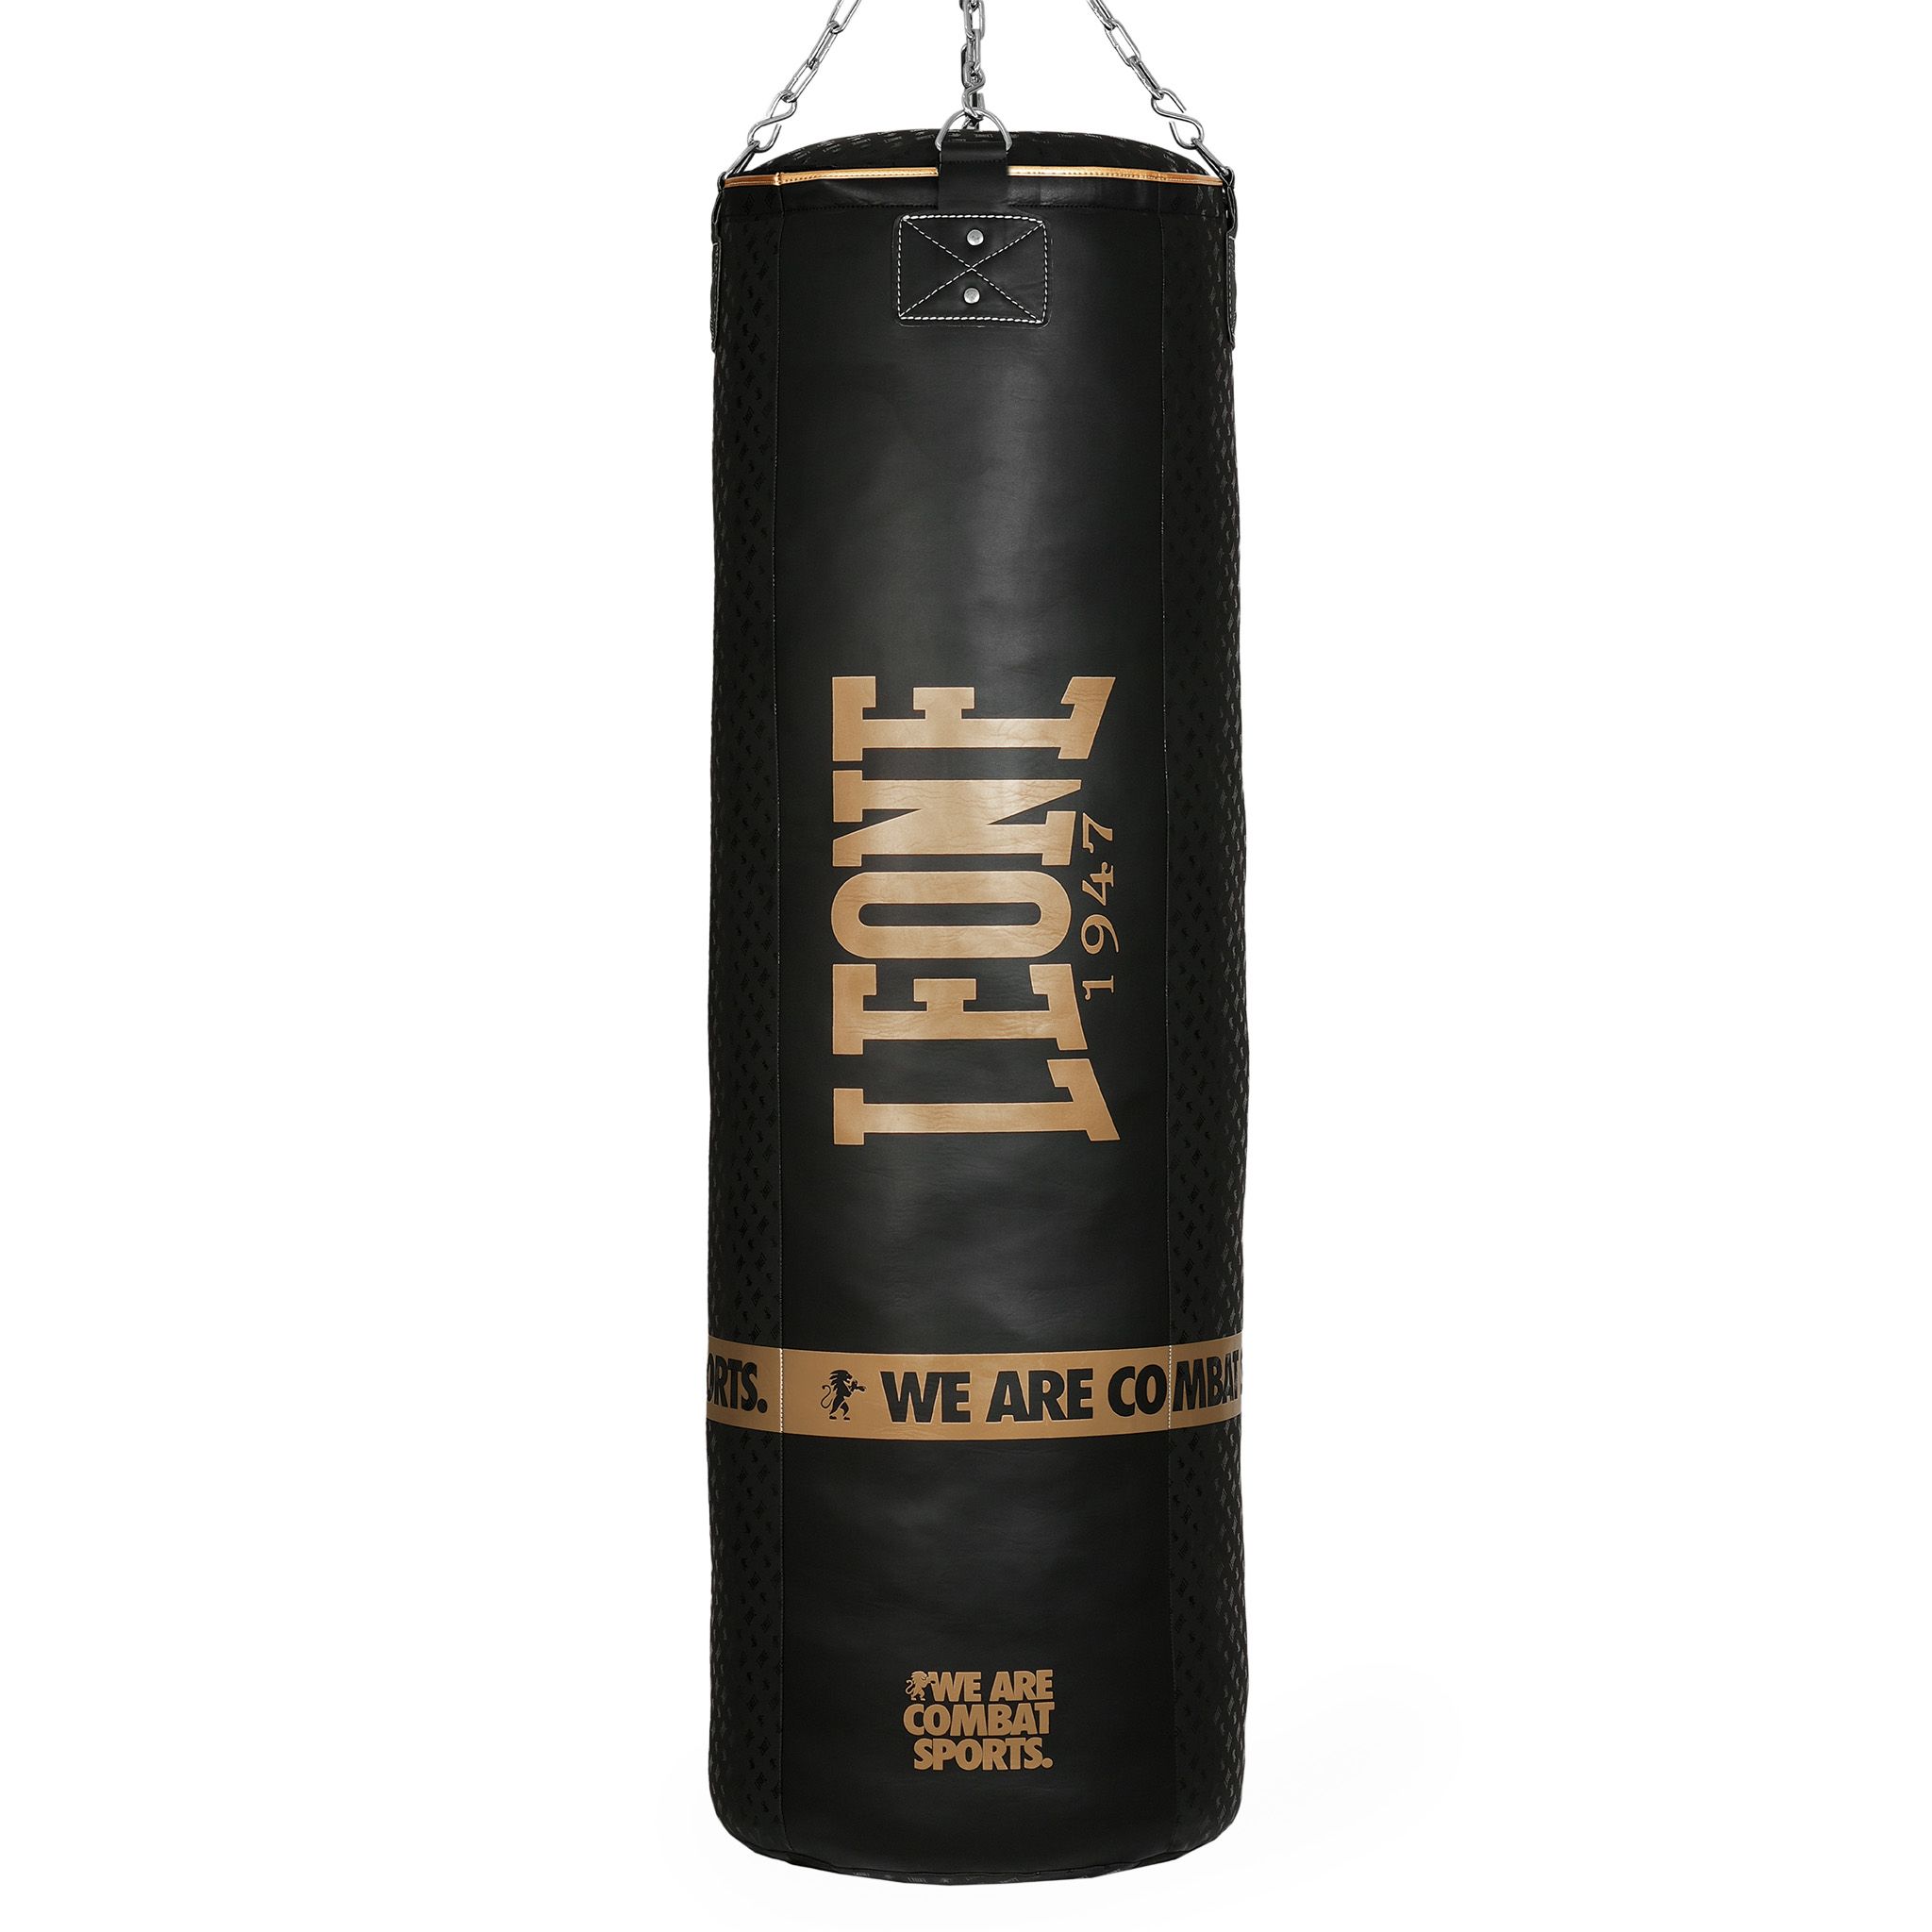 Saco de boxeo profesional relleno de 60 kg Leone 1947 "King Size" AT856 DNA